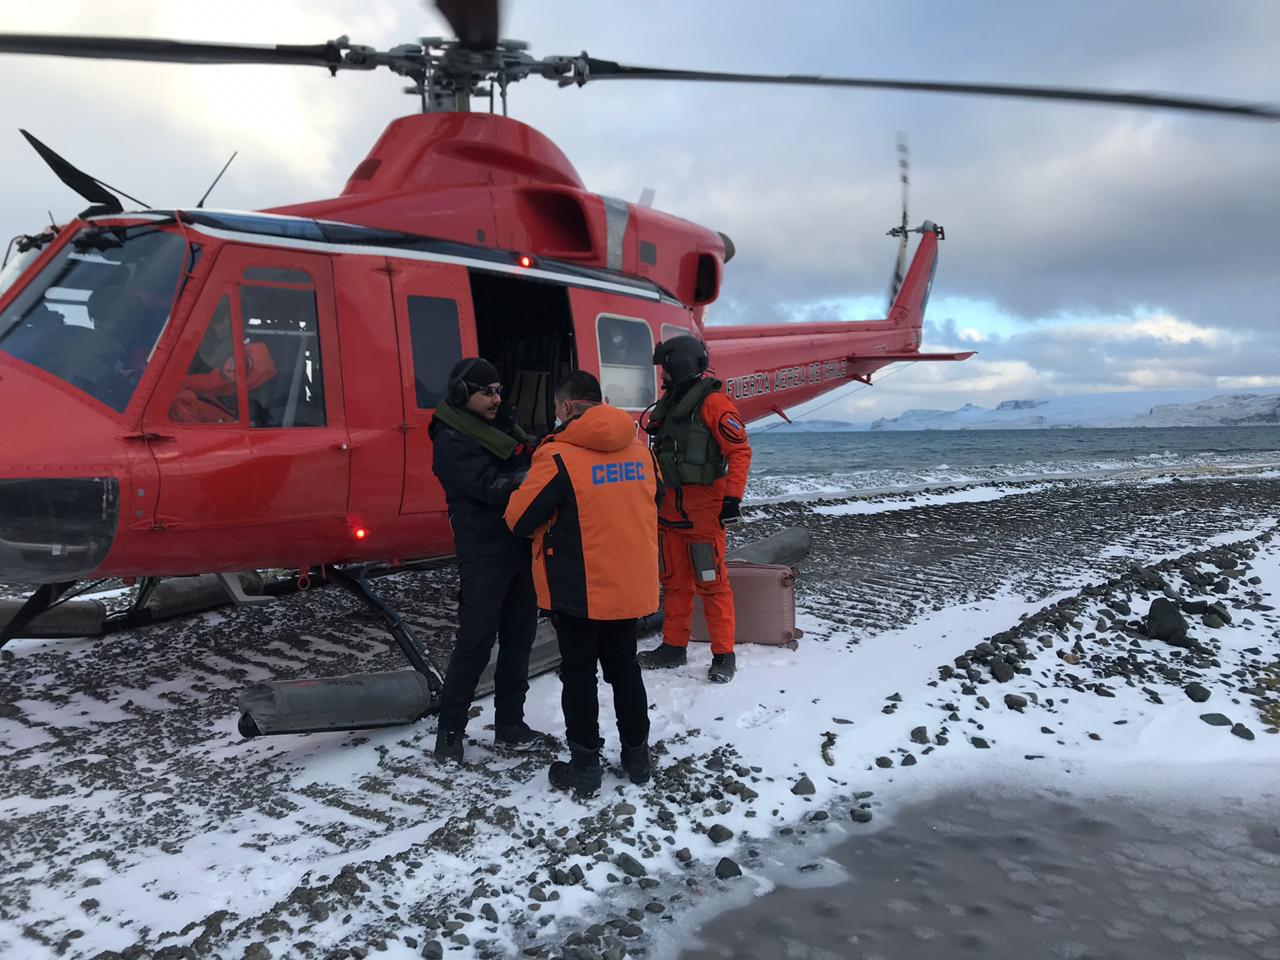 Base Aérea Antártica realizó aeroevacuación médica de un científico desde la base brasileña a la base china